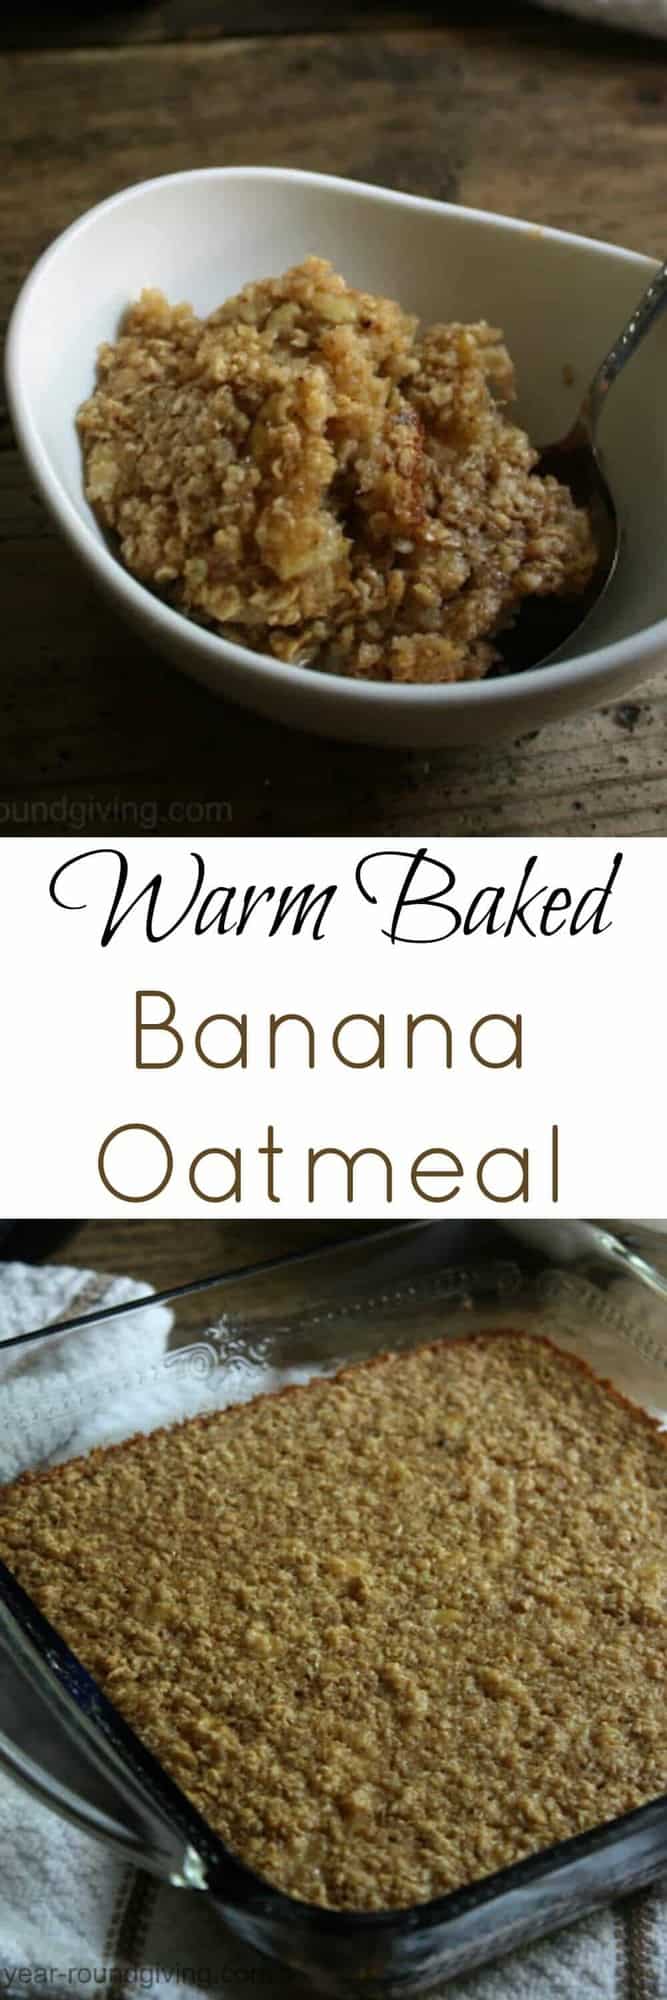 Warm baked banana oatmeal